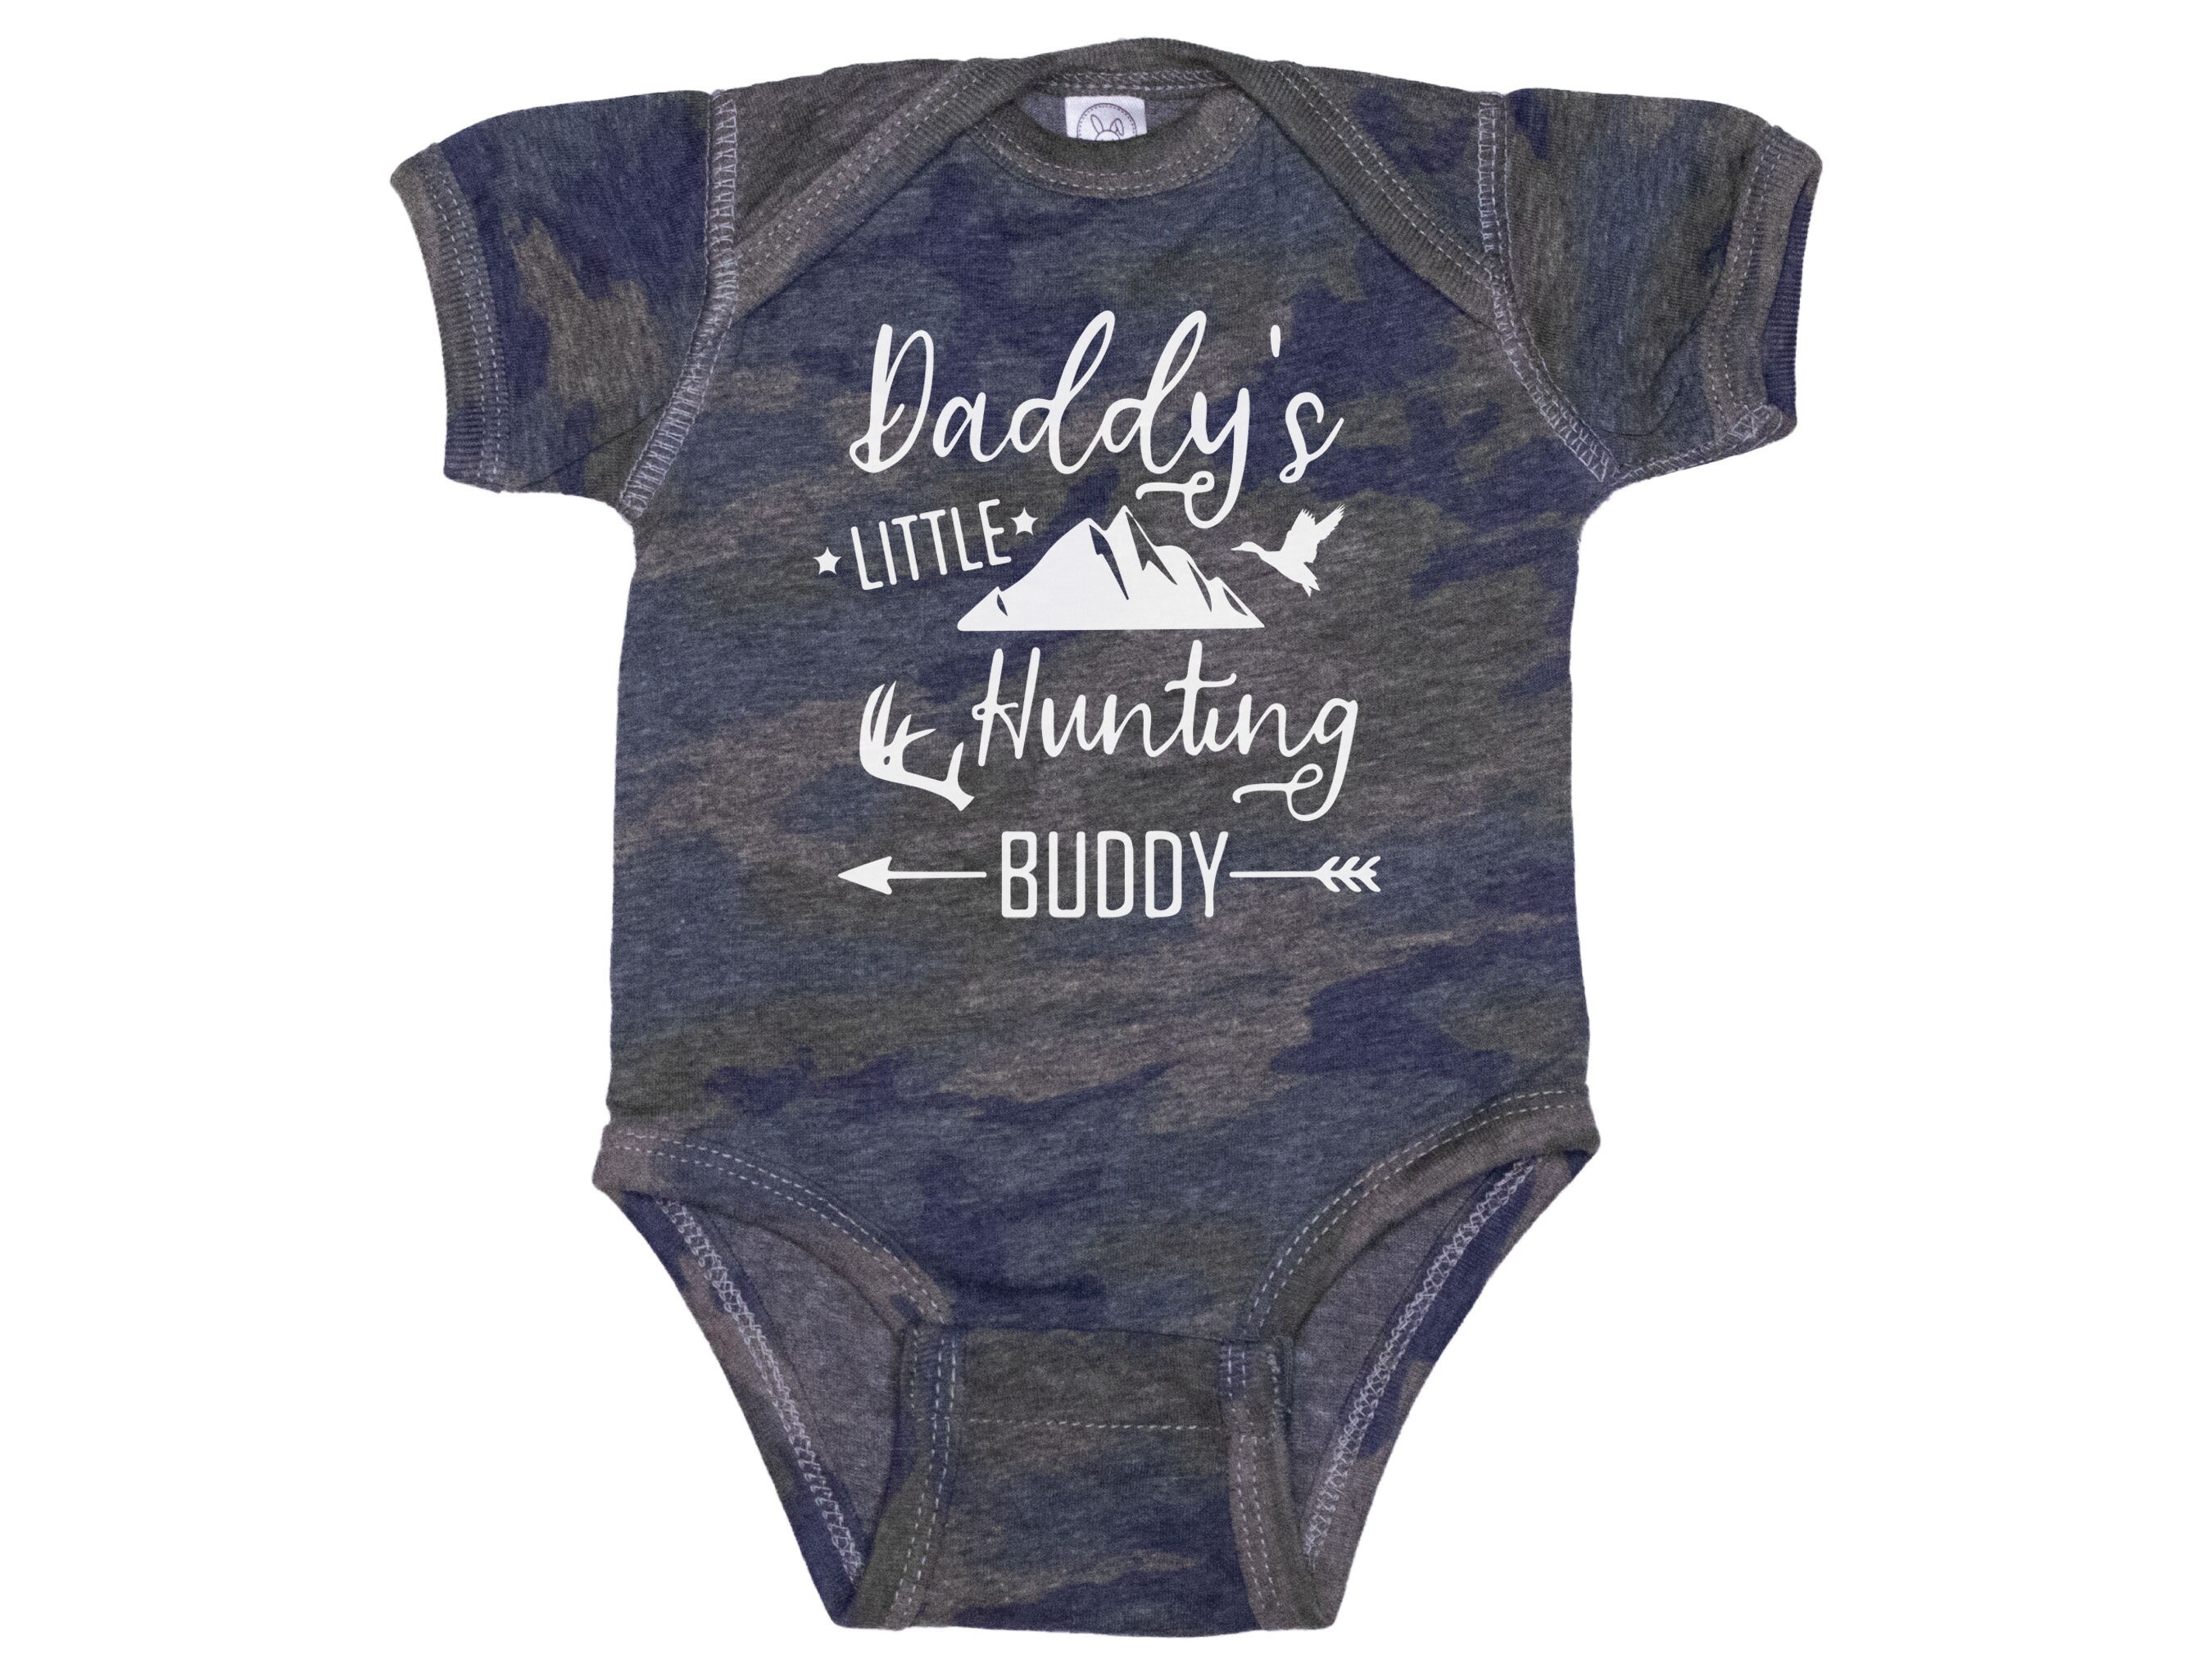 Daddy's Future Crossfit Buddy Bodysuit for Boy Bodybuilder Shirt